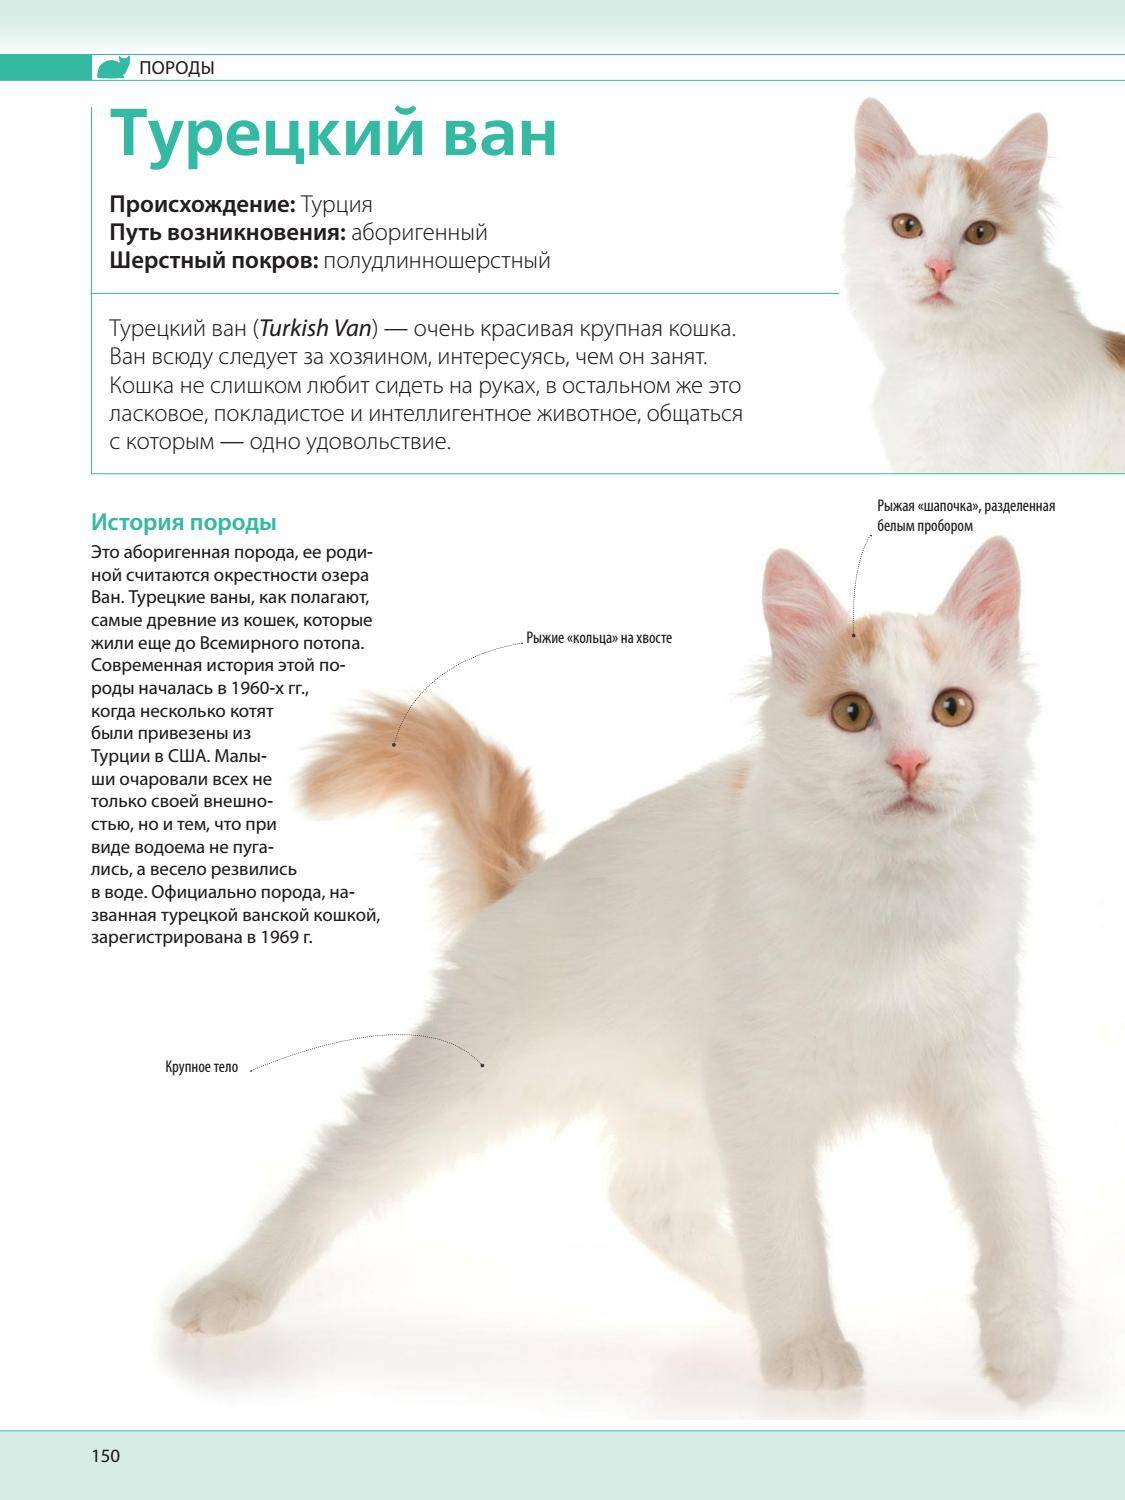 Ванские кошки: фото и характеристики породы, какова цена турецкого вана в россии